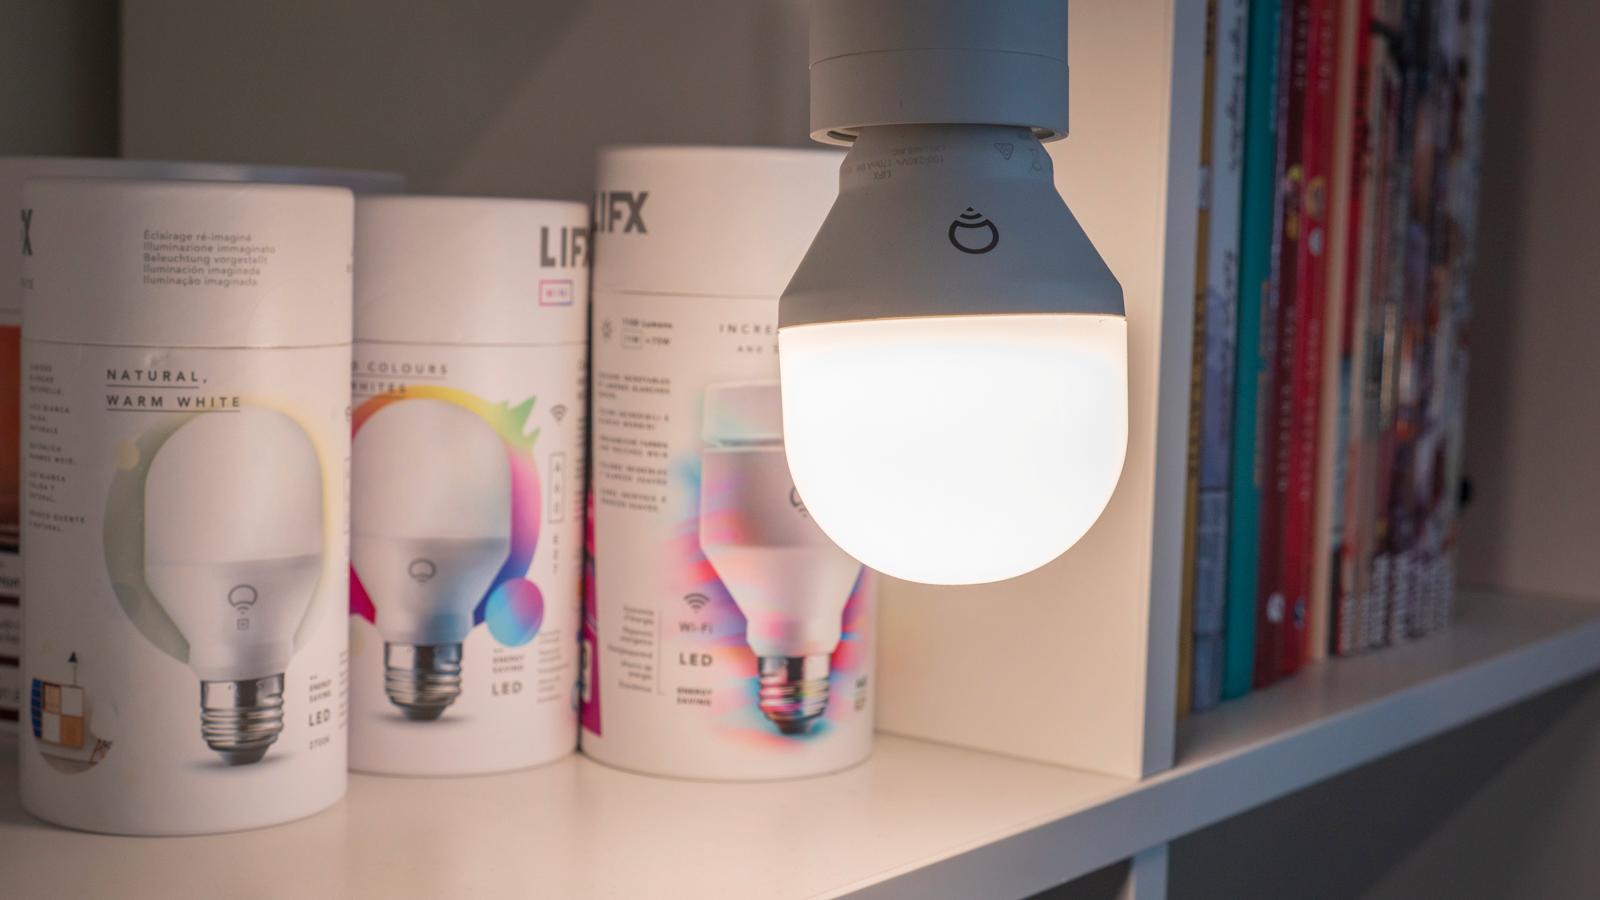 Siden LIFX mangler pærer med E14-sokkel, og ikke har egne lysbrytere o.l. vi kan legge i LIFX-appen, tenker vi at LIFX-pærene og lampene passer best for deg som vil bruke dem i et annet smarthjemsystem, eller som ikke skal lage et så stort system.